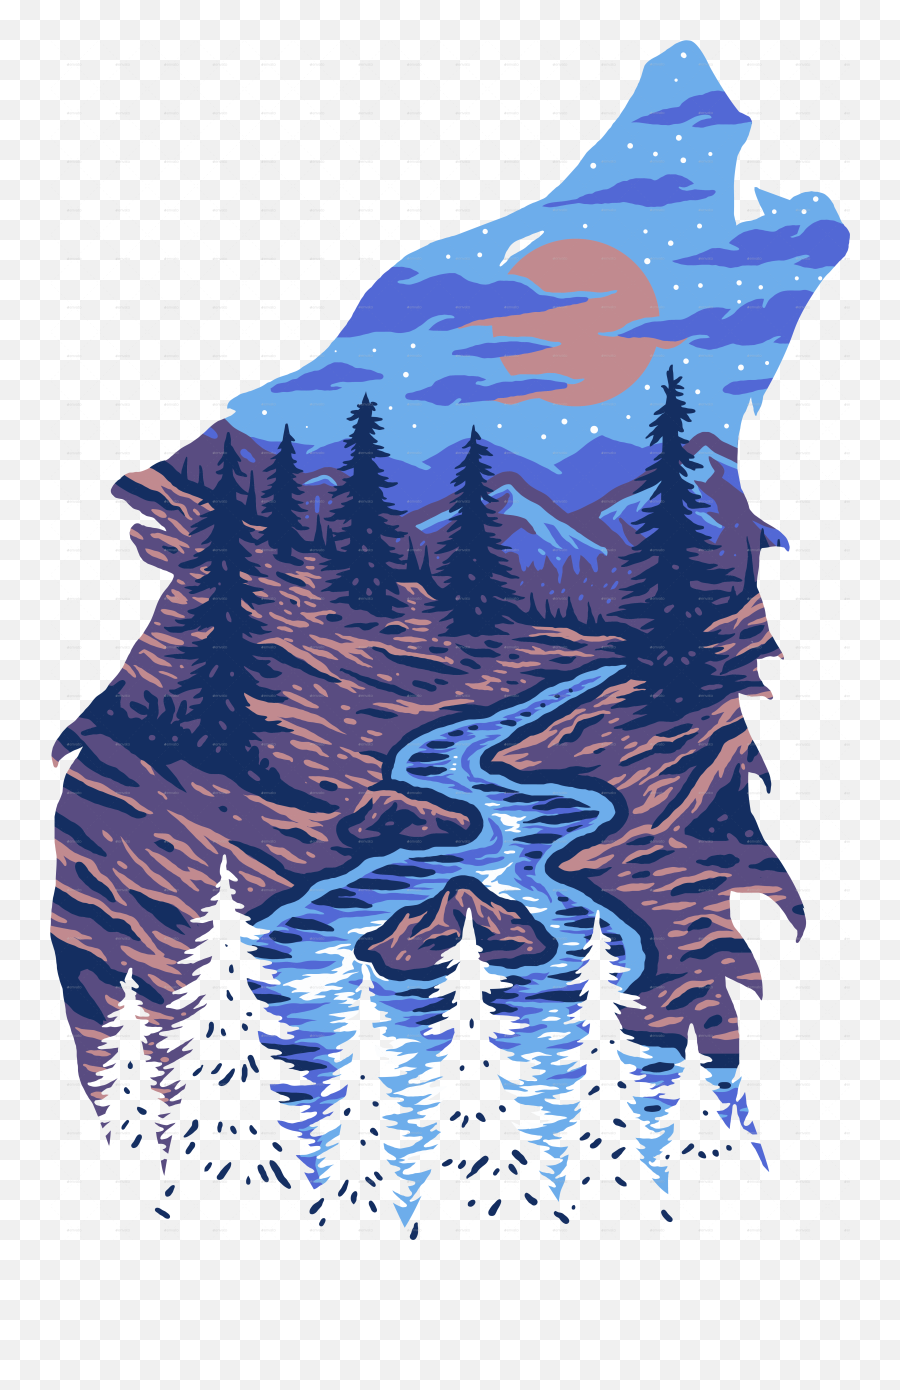 Wolf Forest Landscape - Landscape In A Wolf Emoji,Landscape Png